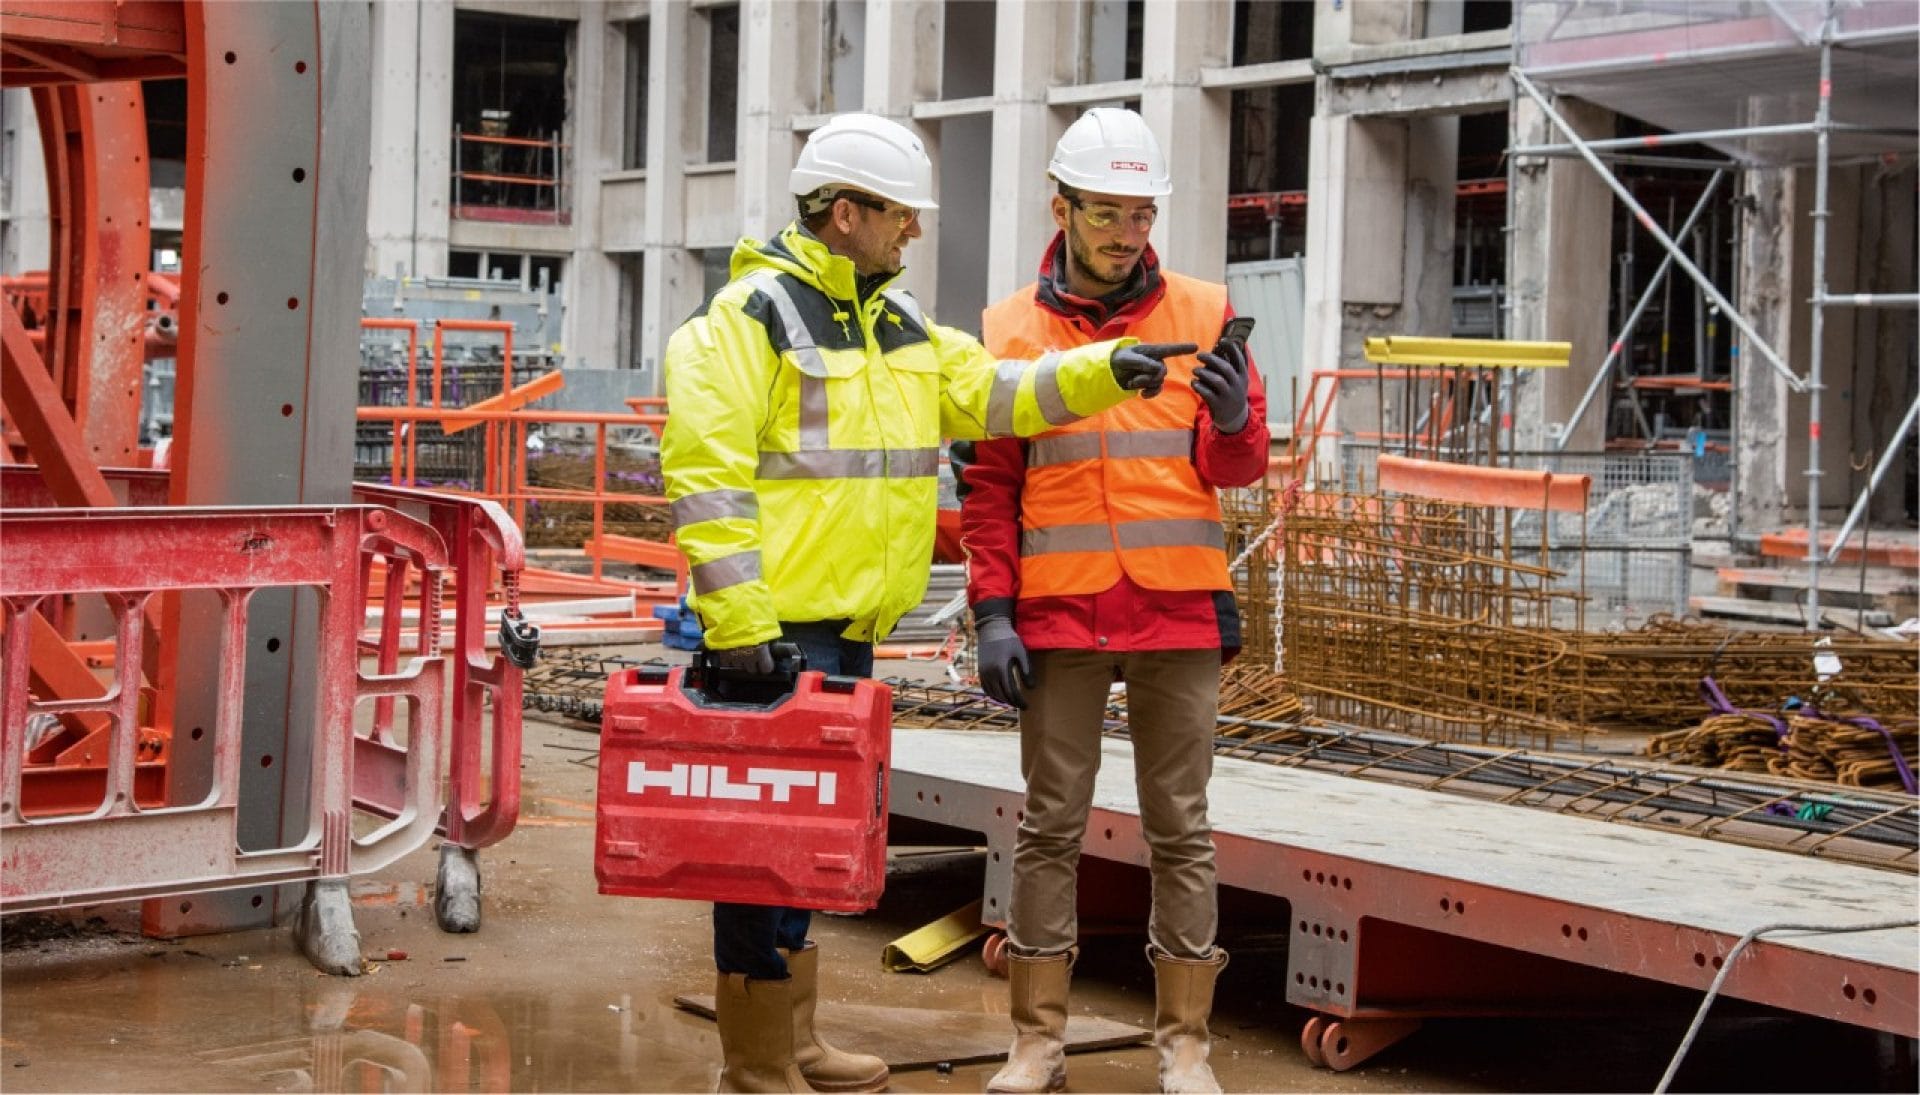 Eine große Baustelle, inmitten der zwei Männer in Warnwesten und Baustellenhelmen stehen. Die beiden sprechen und schauen auf ein Handy, einer davon hält einen roten Hilti Werkzeugkoffer.